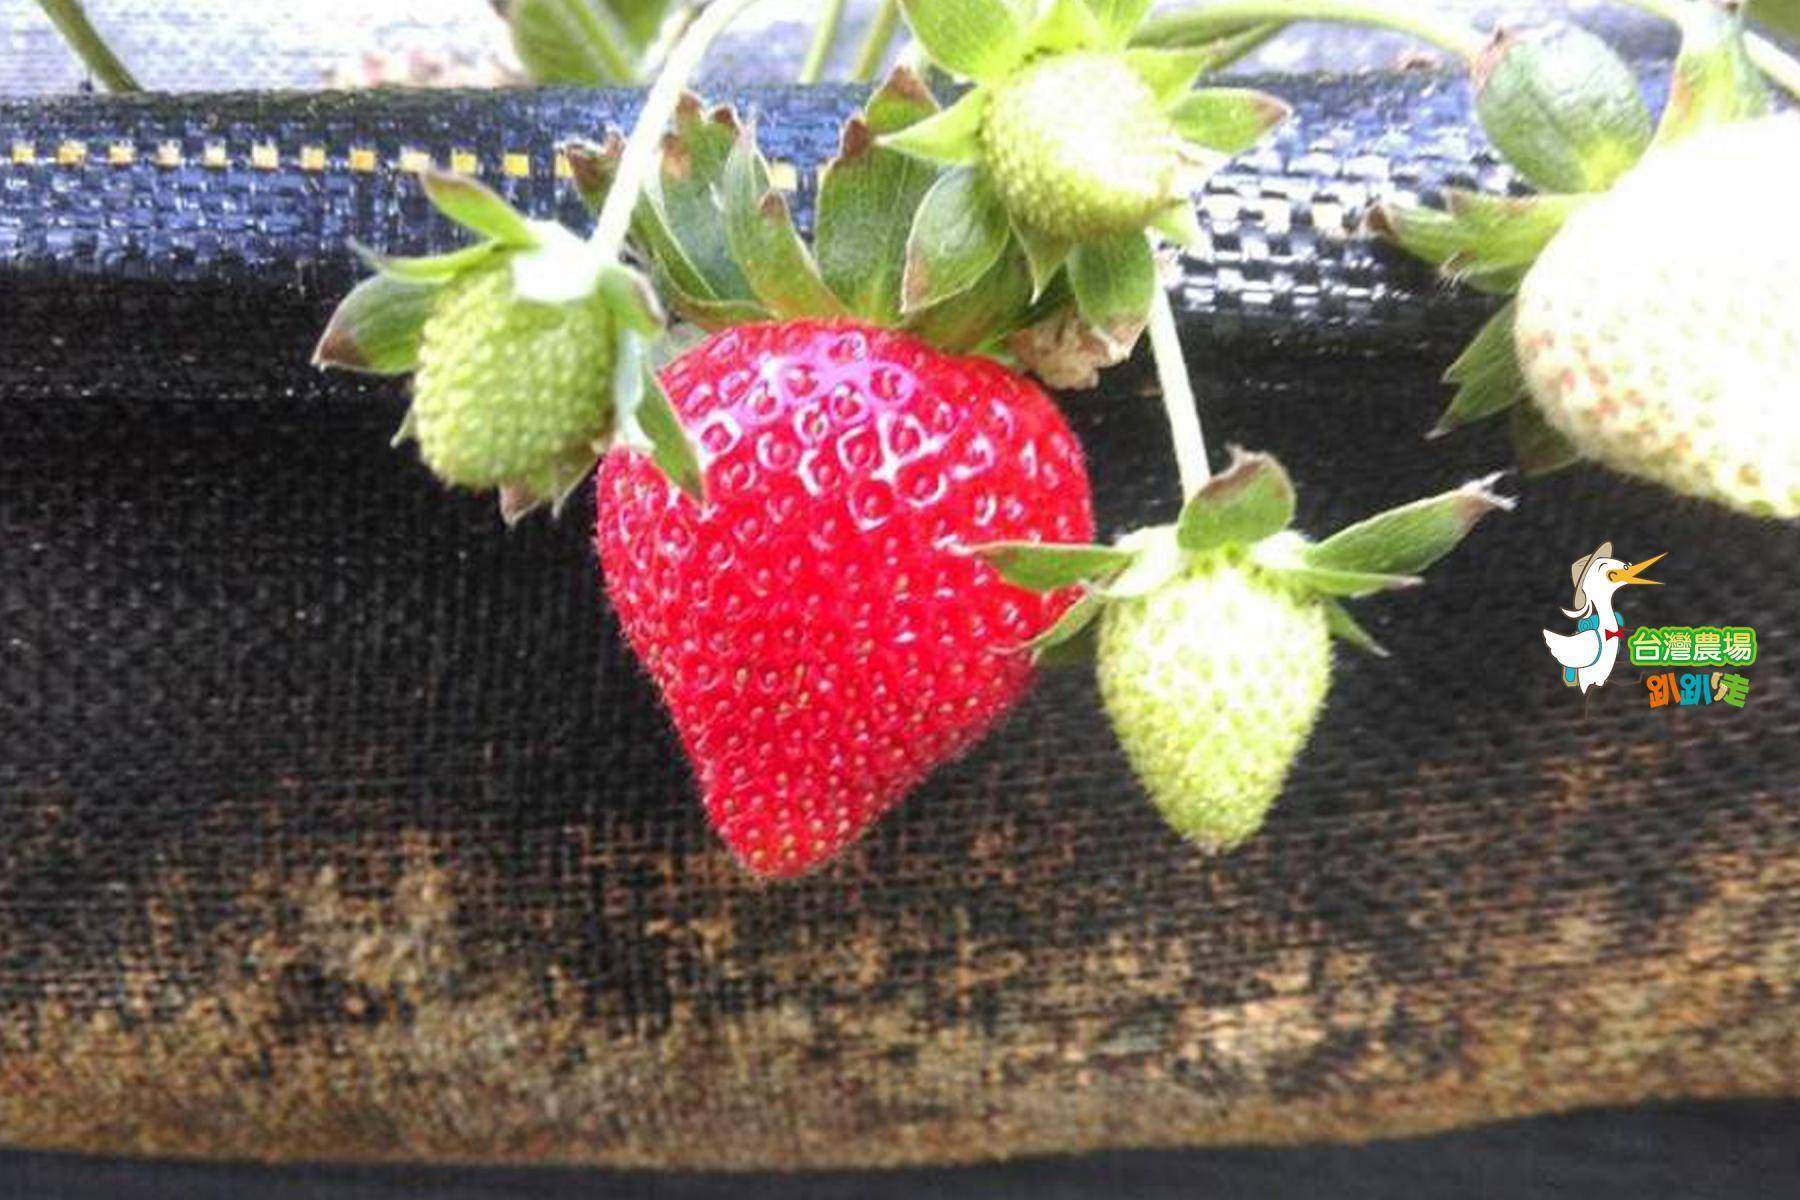 (舊)屏東-莓洋洋草莓園-採果(草莓)體驗券3